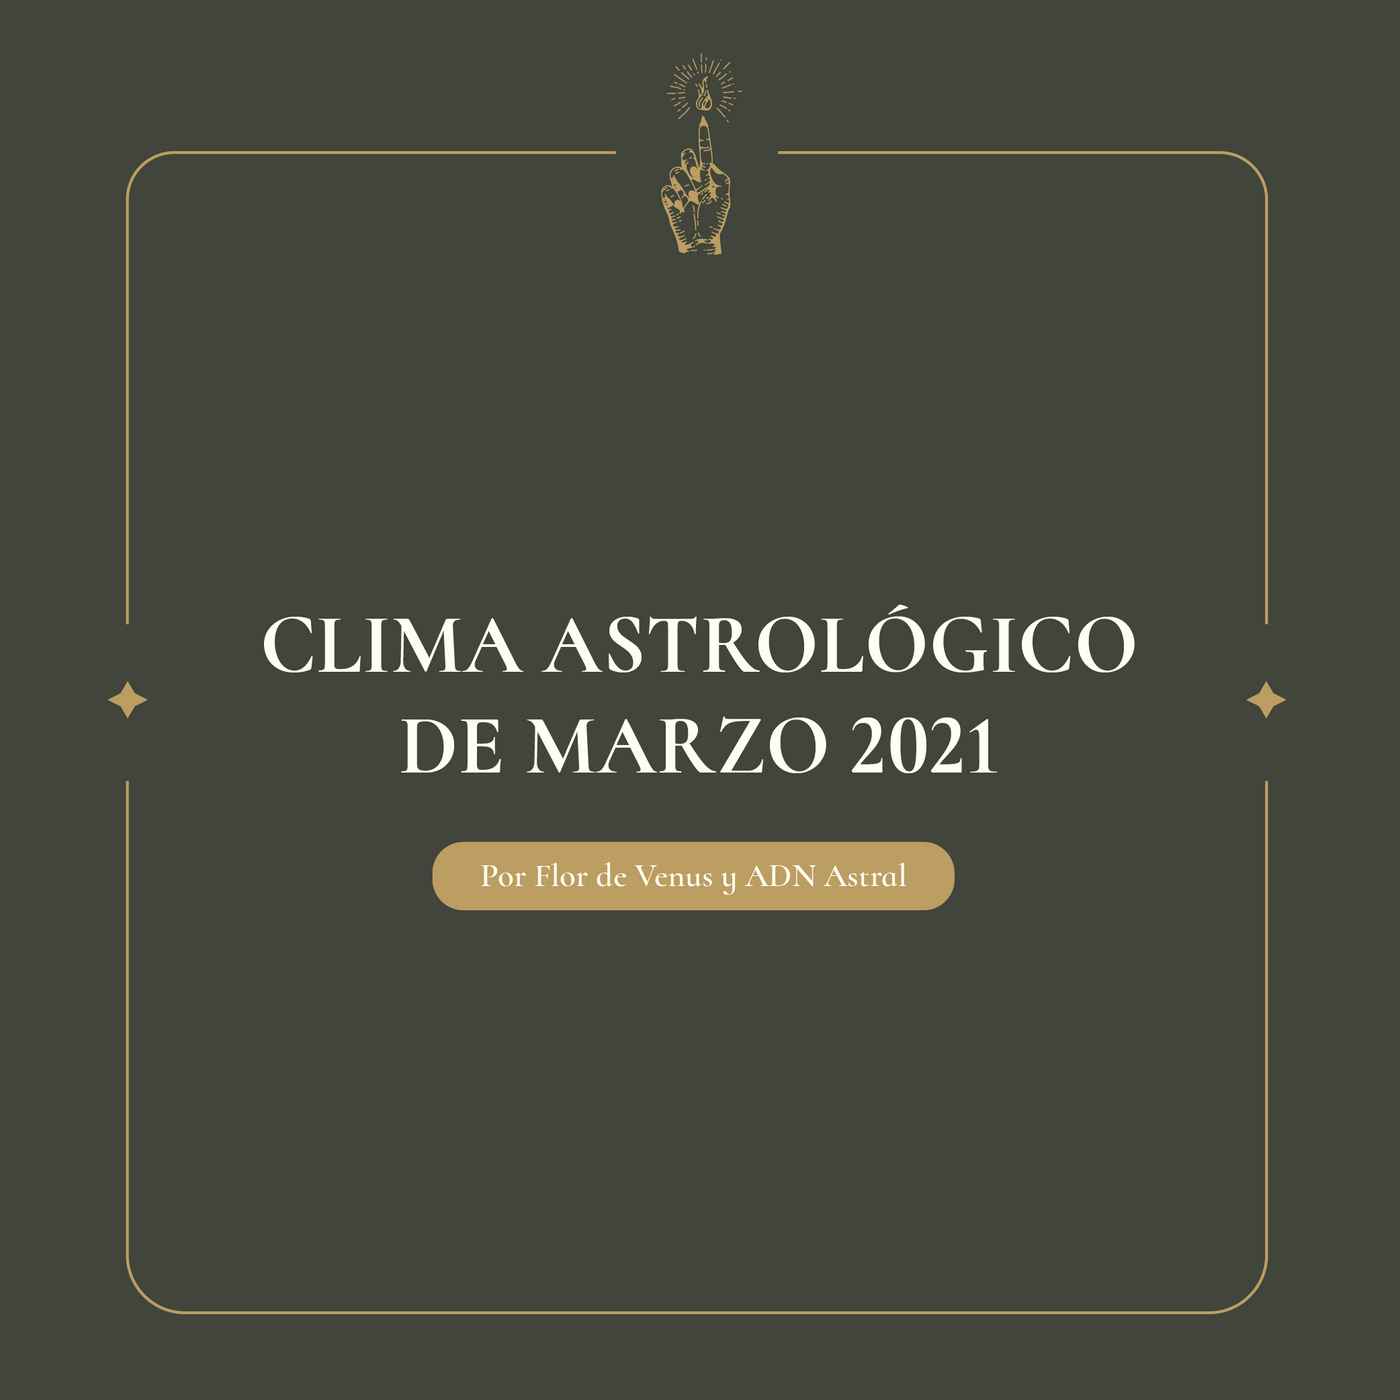 Clima Astrológico de Marzo (con fases lunares)